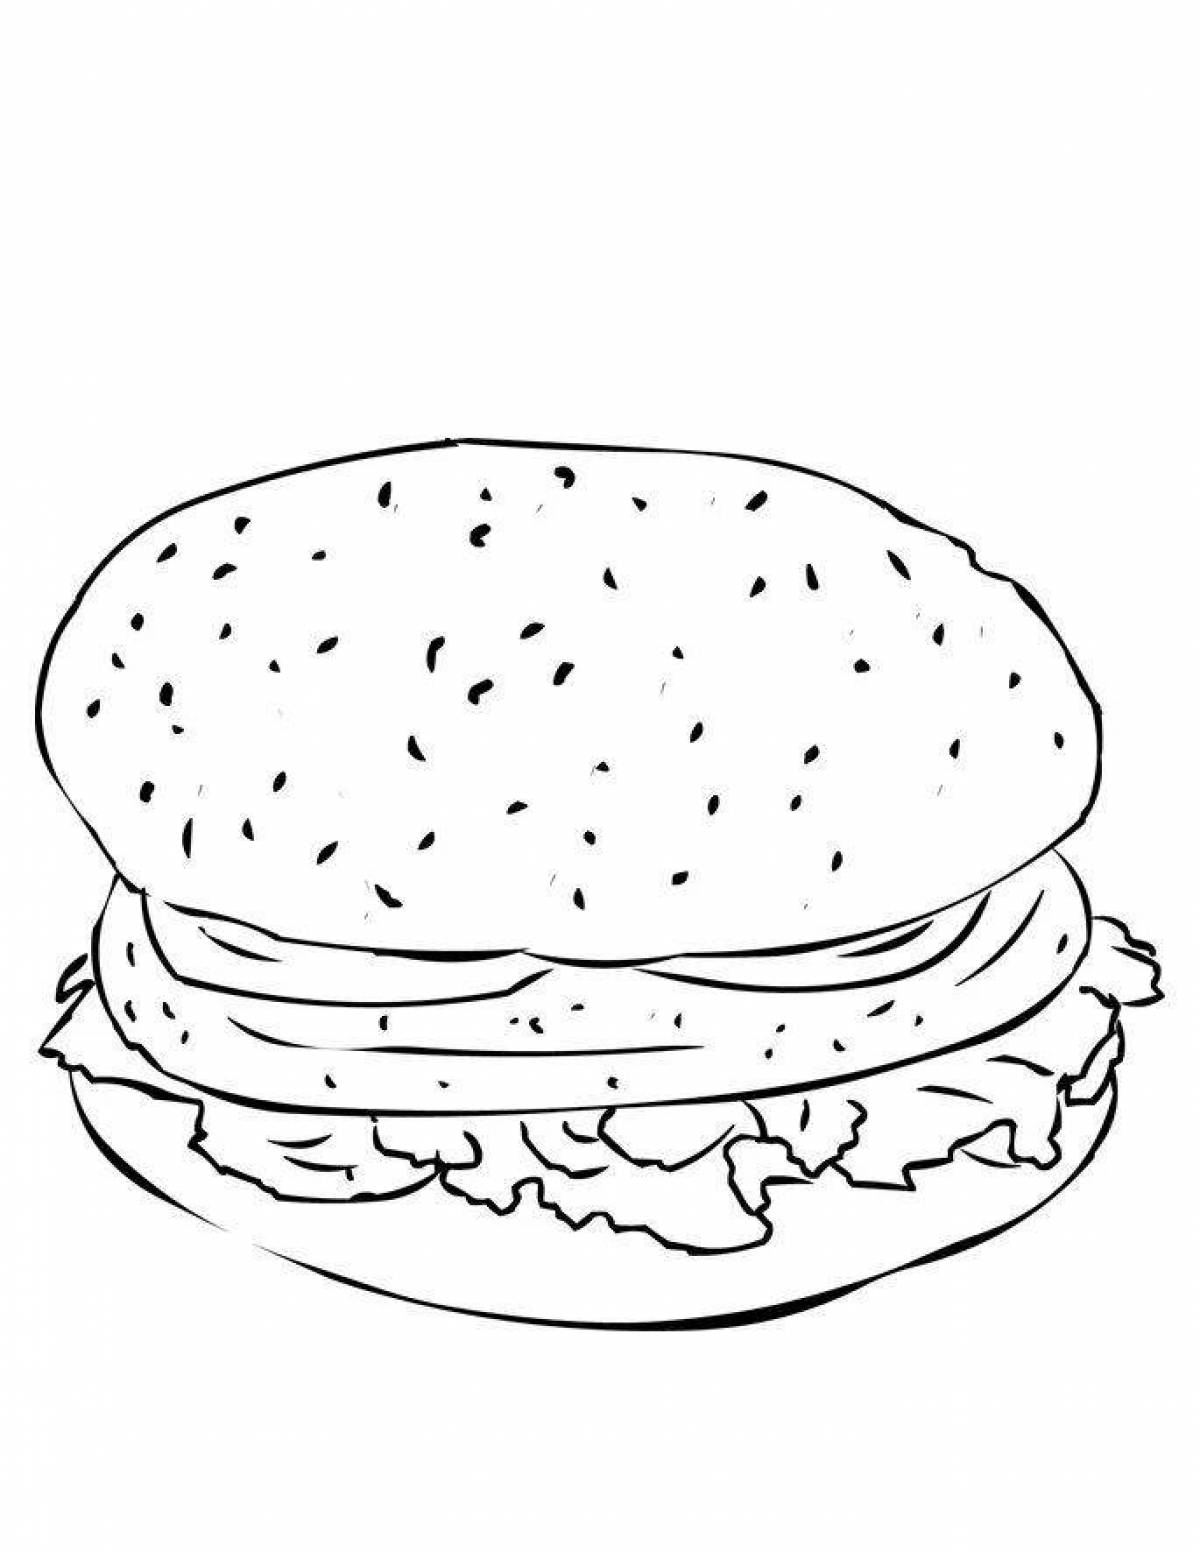 Holiday hamburger coloring page